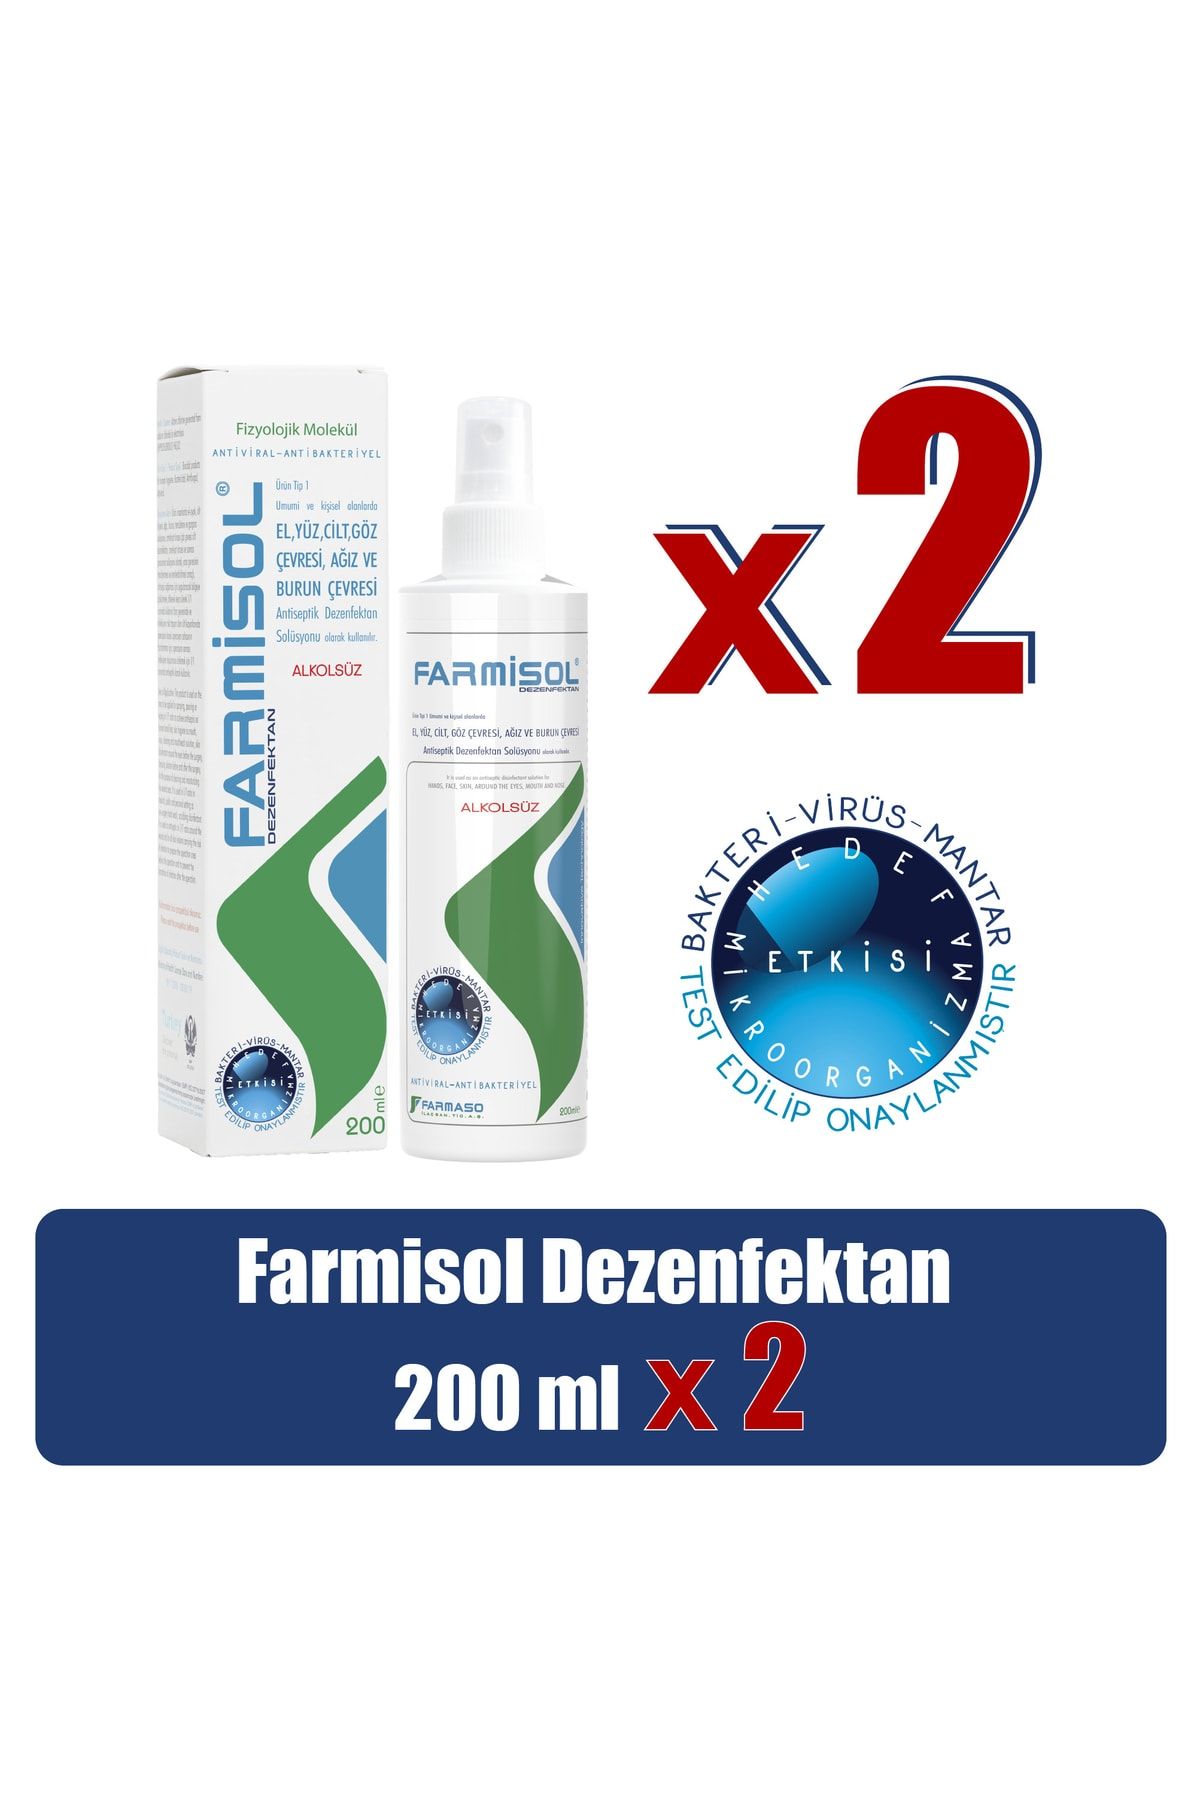 Farmisol Dezenfektan - Kişisel Kullanım Antiseptiği 200ml - 2 Adet